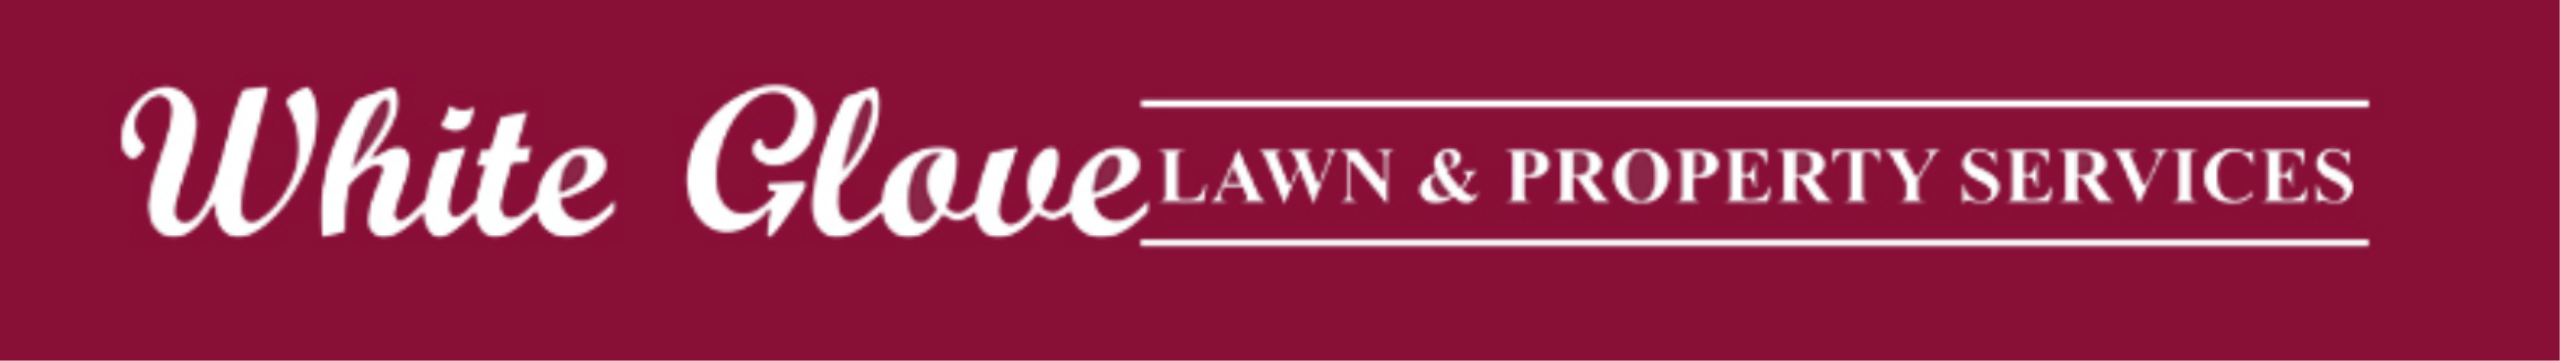 White Glove Lawn & Property Services Logo